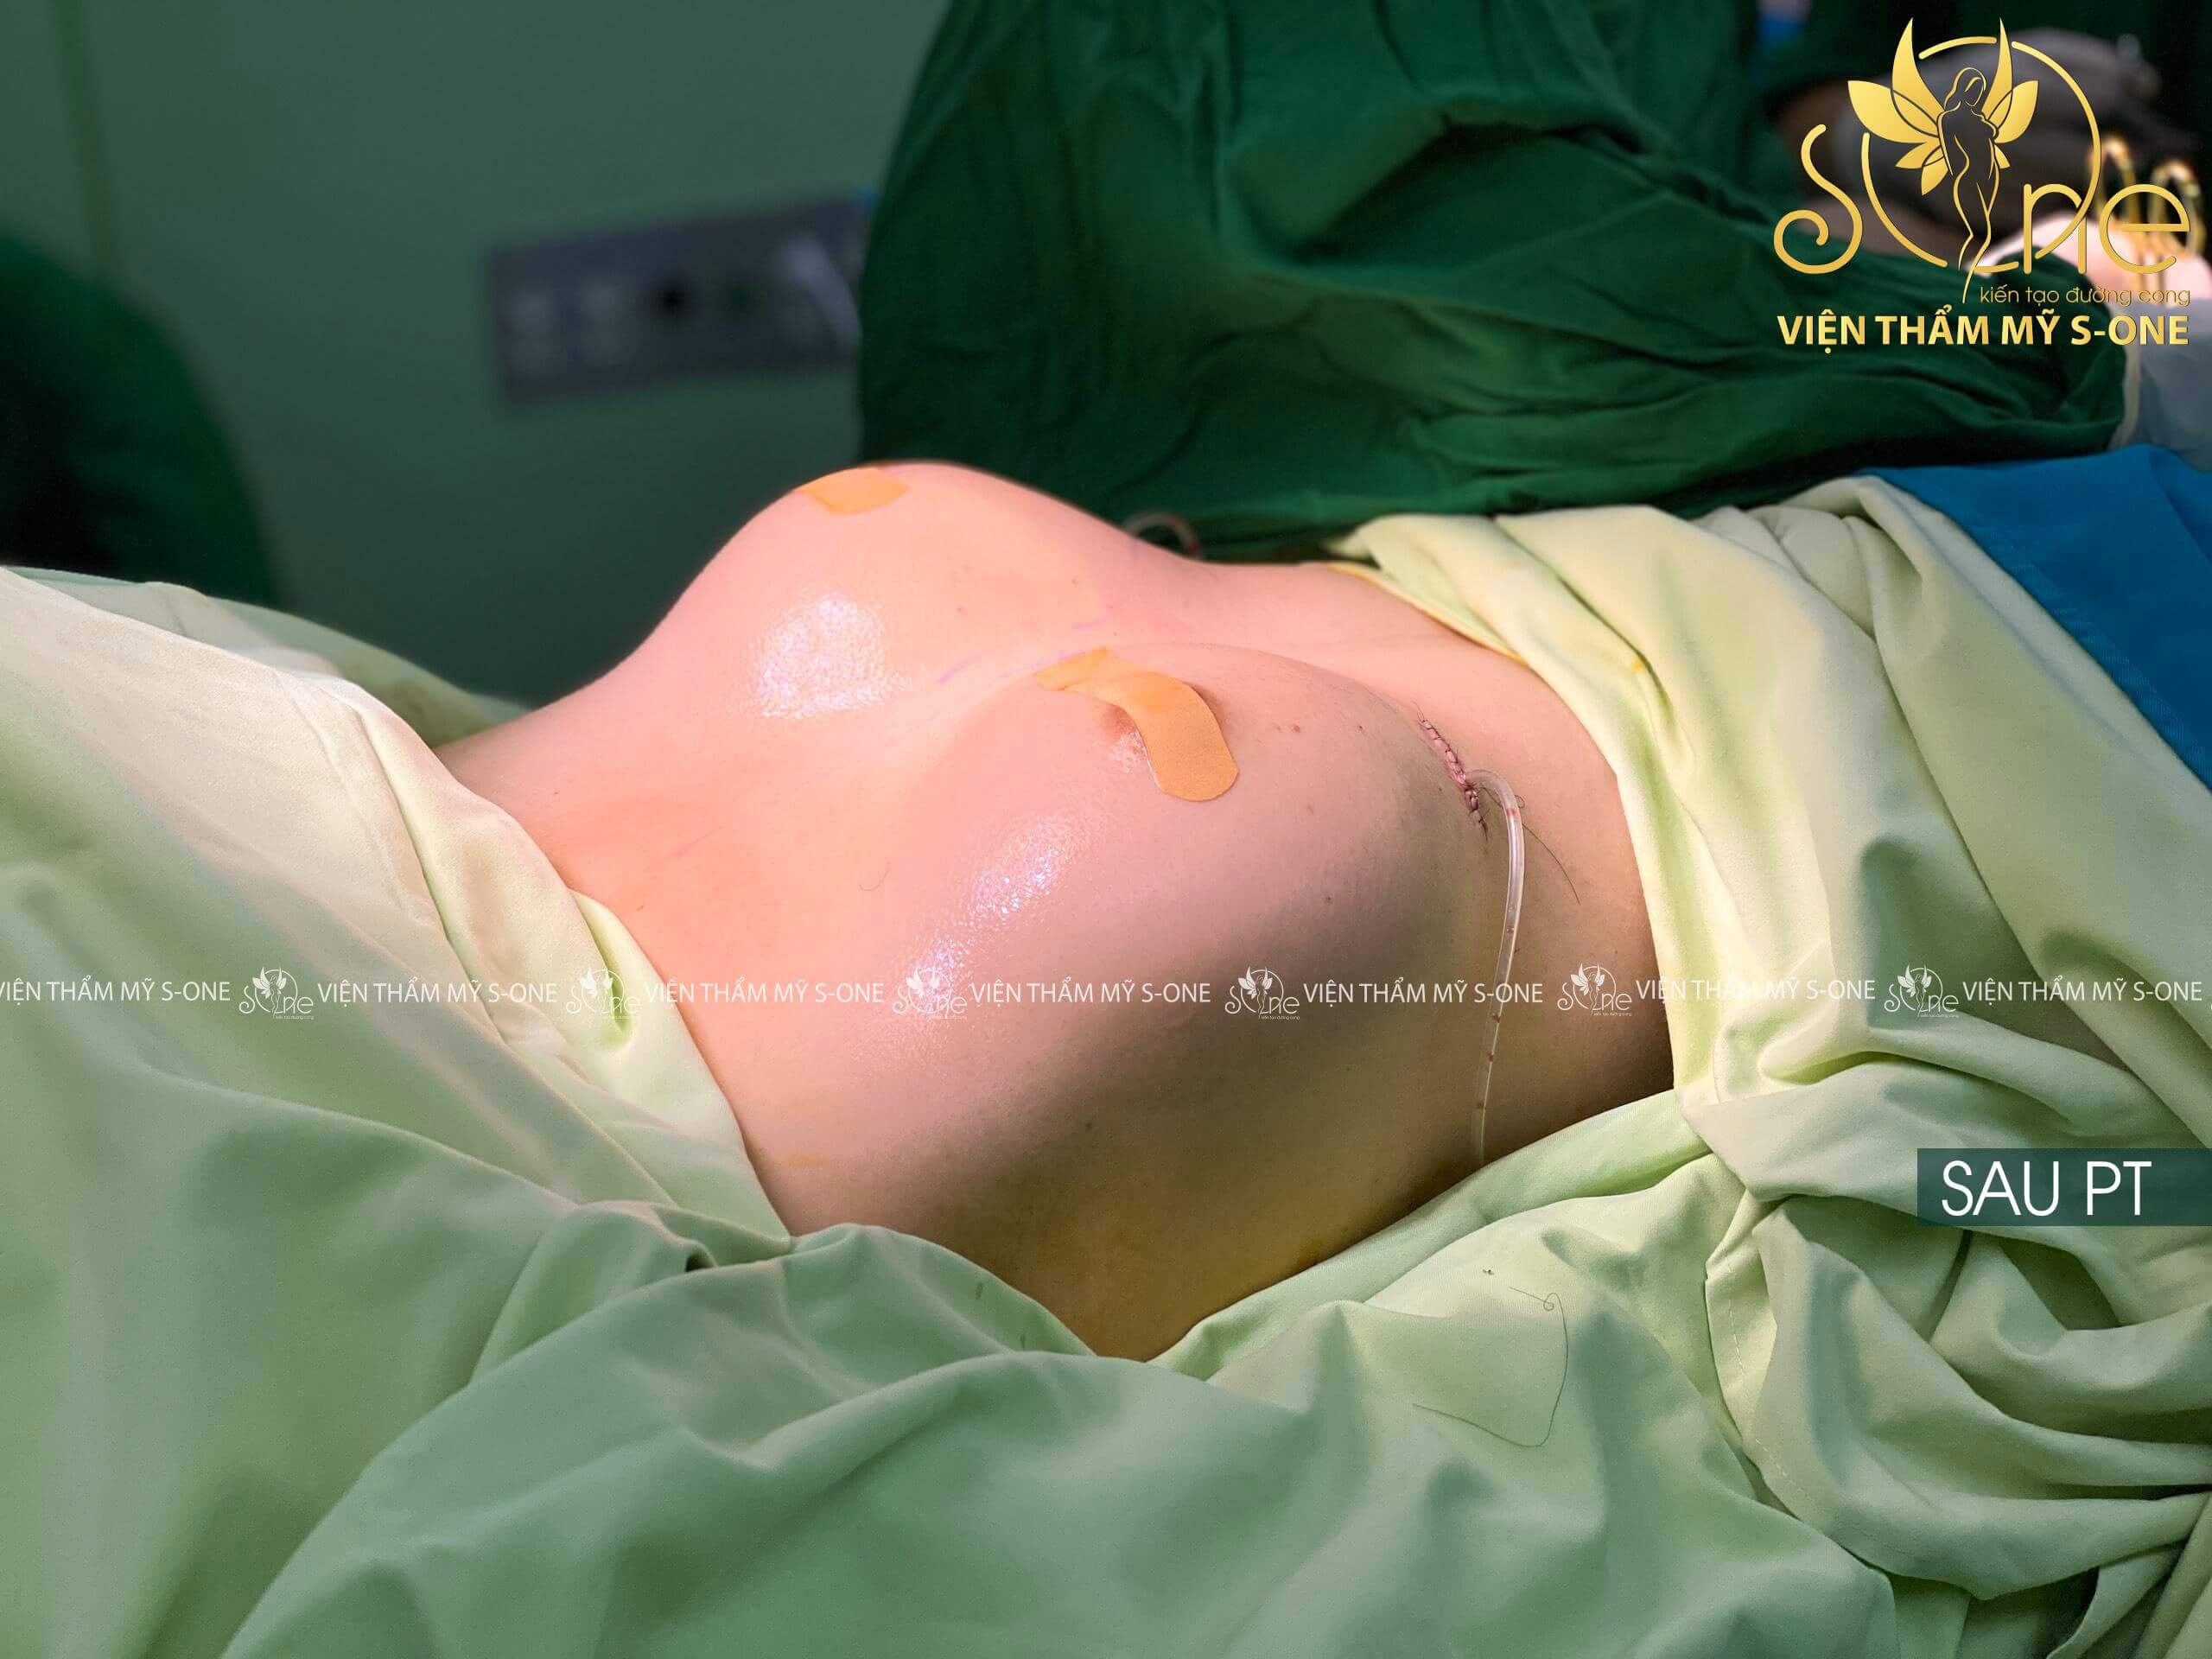 video phẫu thuật nâng ngực nội soi